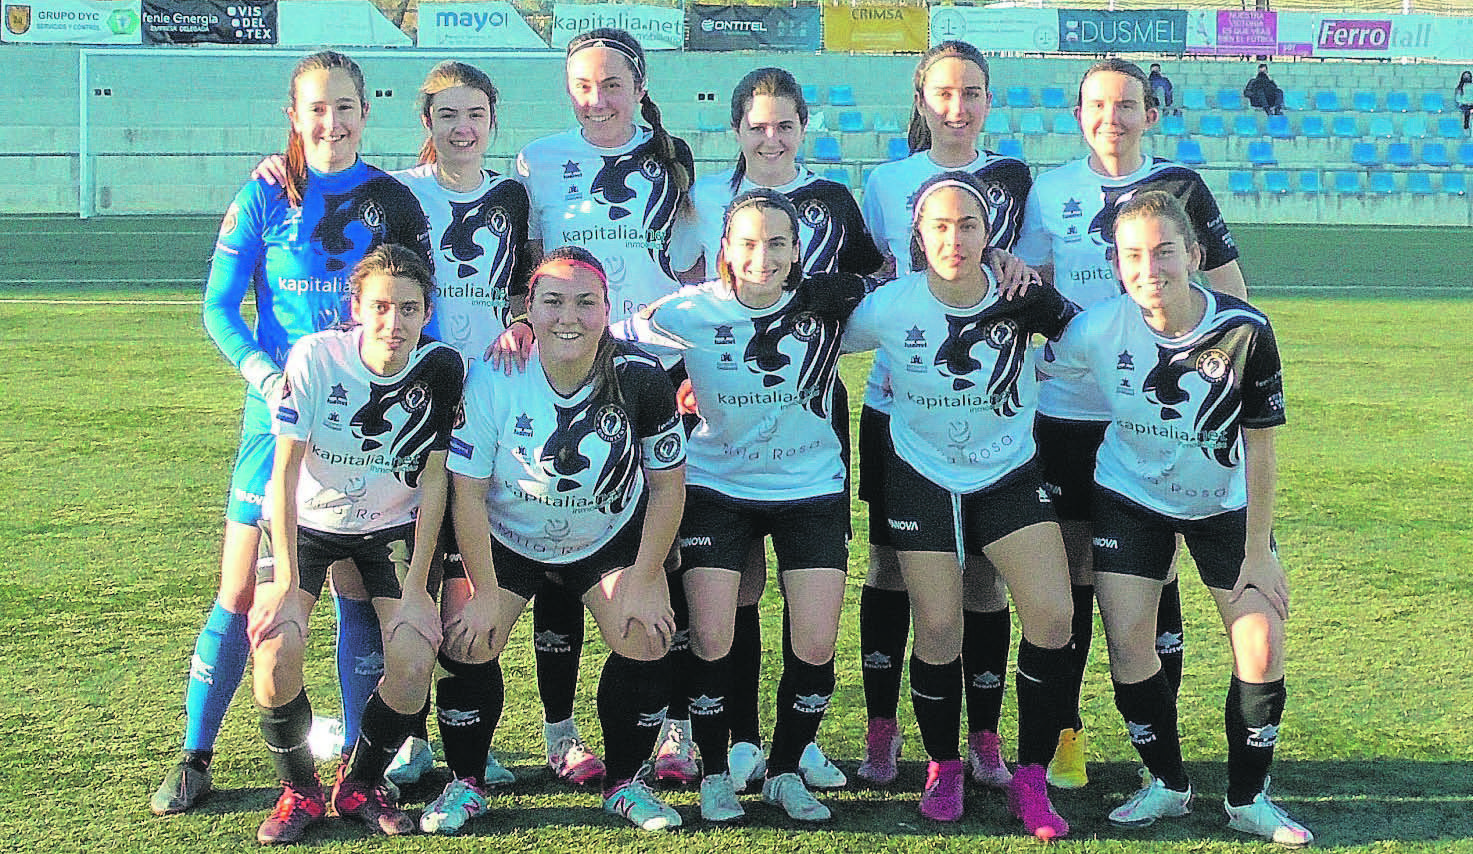 El Amateur Femenino juega tres partidos en ocho días El Periódico de Ontinyent - Noticias en Ontinyent